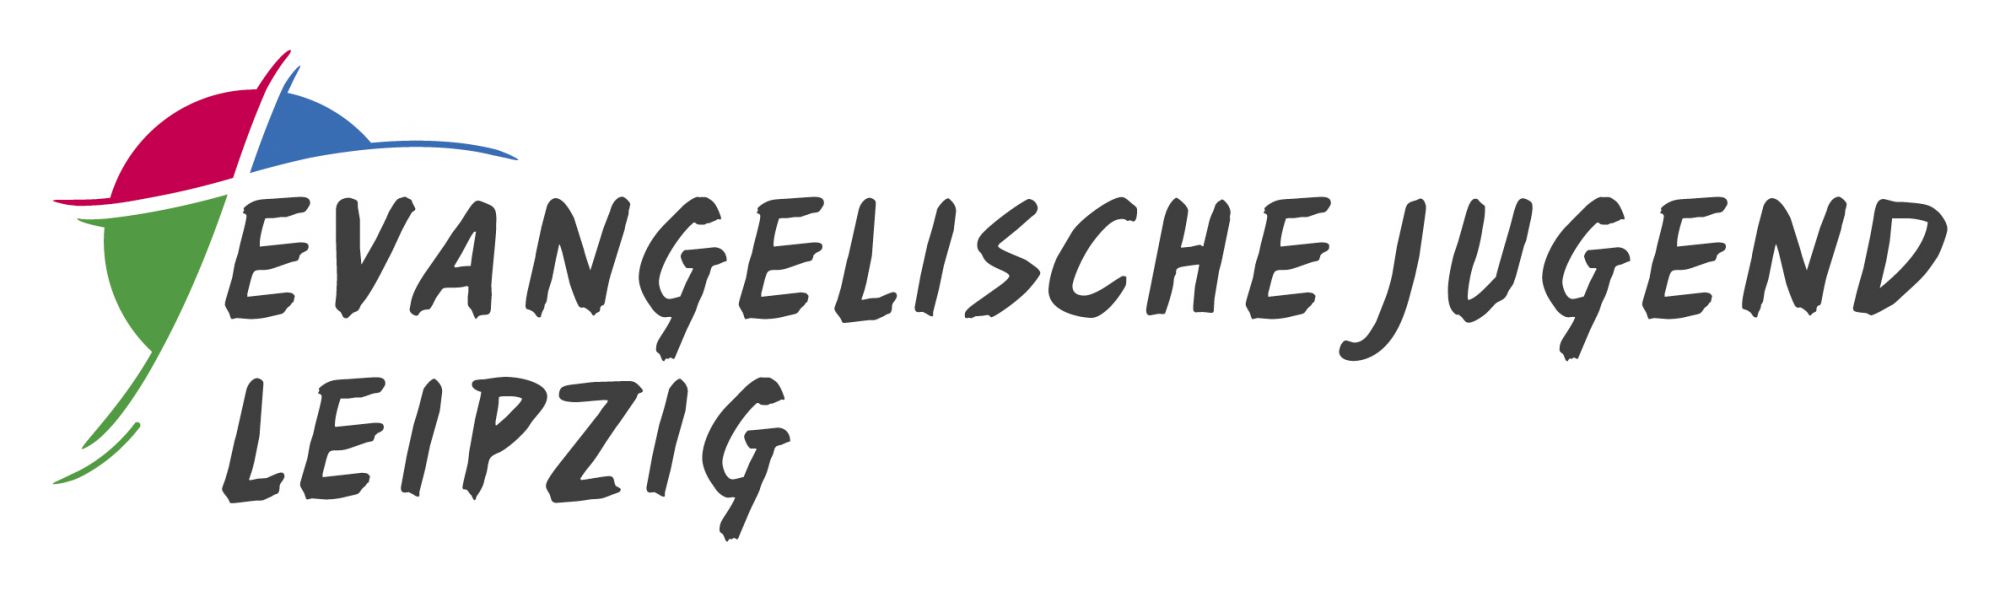 Evangelische Jugend Leipzig